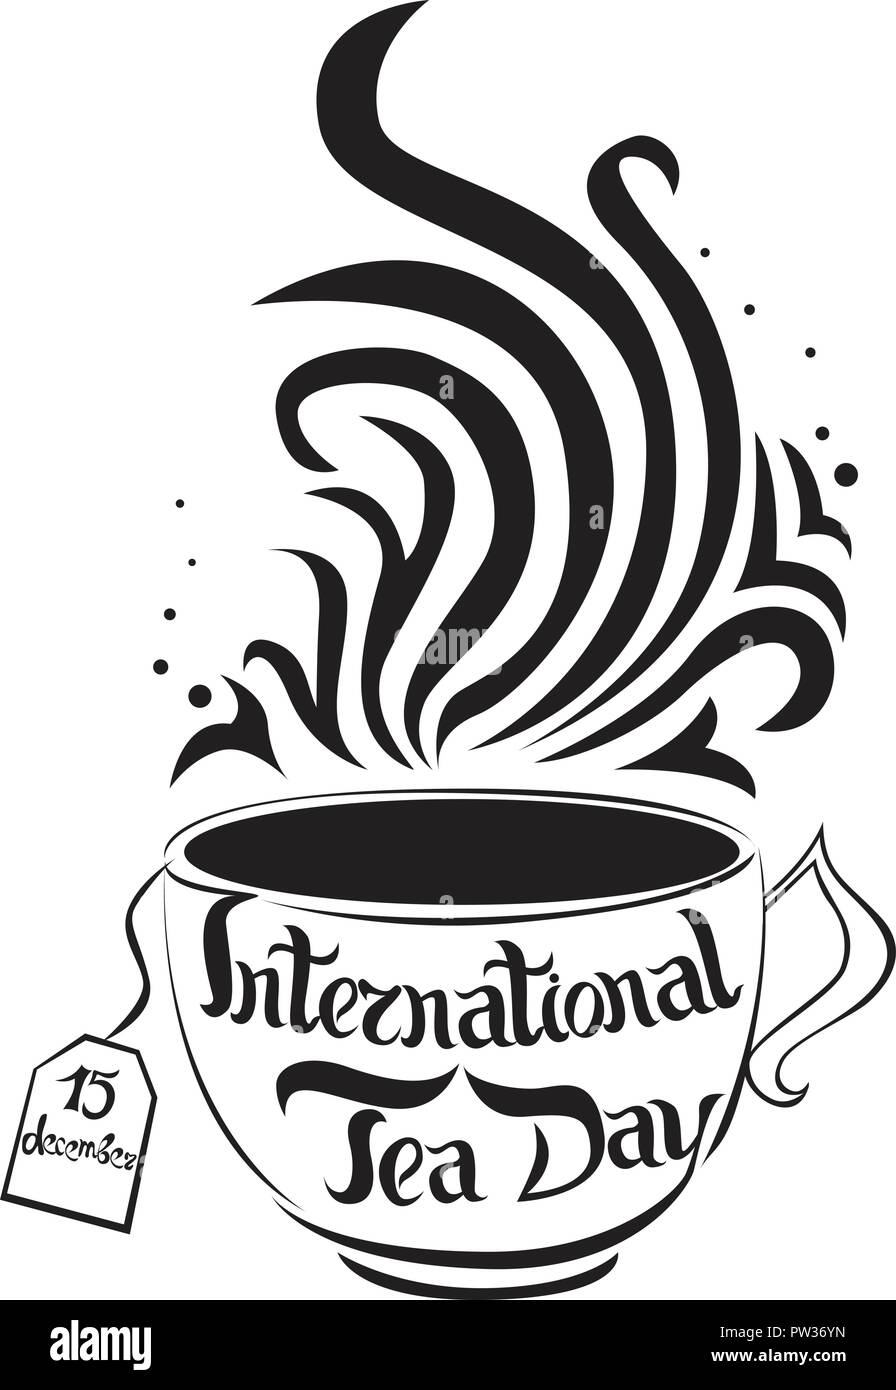 International tea giorno. 15 dic. lettering. Illustrazione Vettoriale su sfondo bianco. Immagine isolata. Può essere usato come un logo, invito, t-shirt stampa, etc. Illustrazione Vettoriale